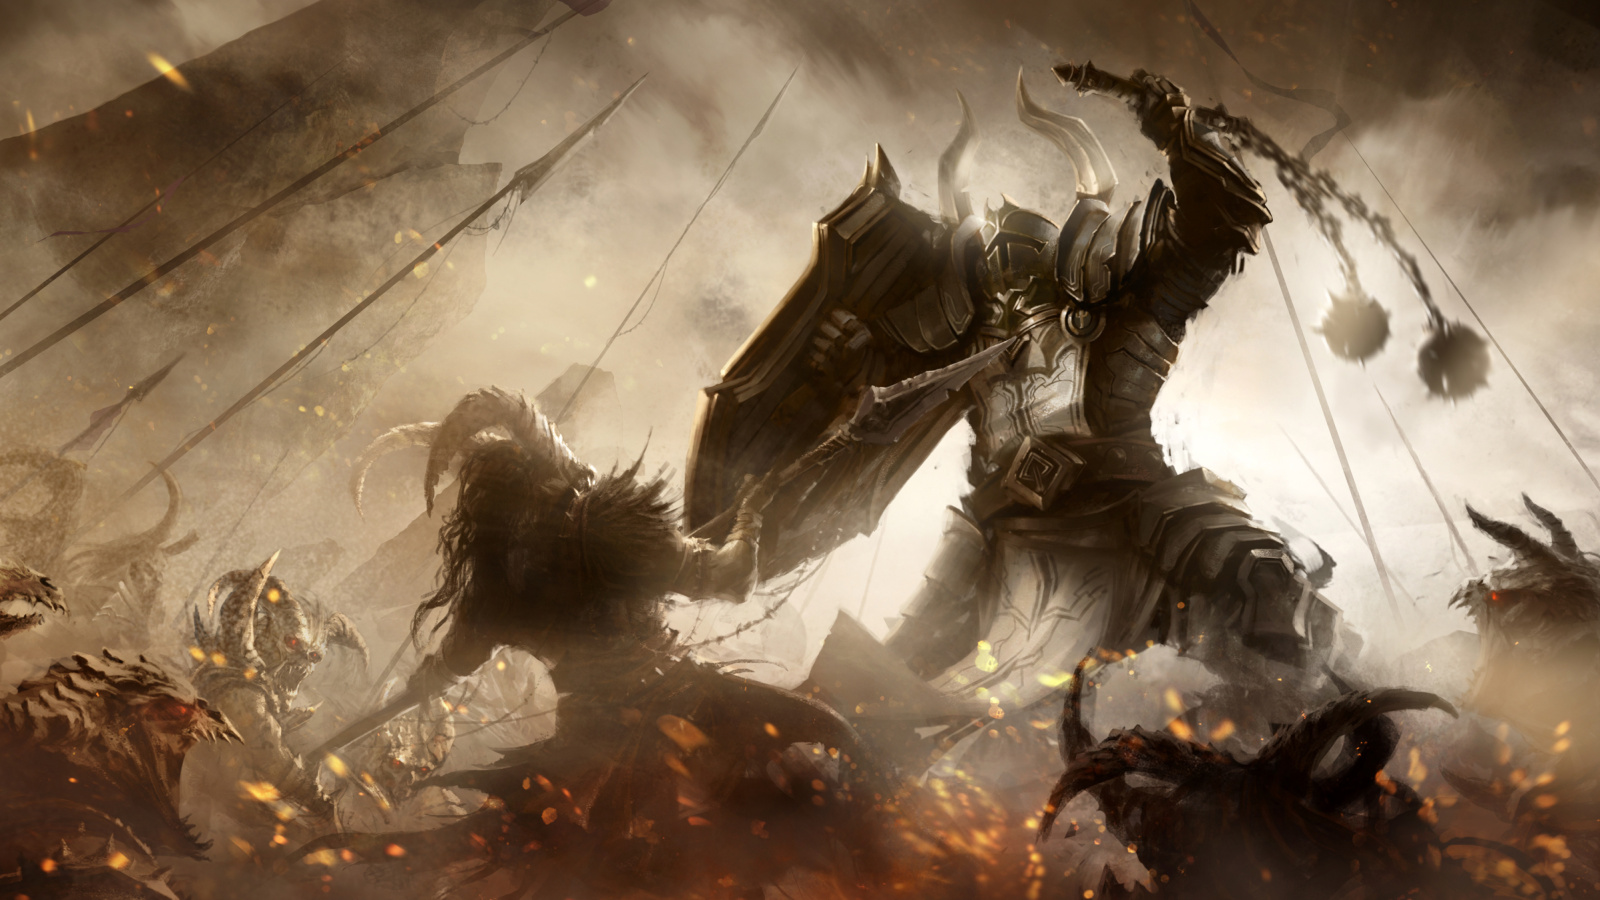 Diablo III battle of knights wallpaper 1600x900